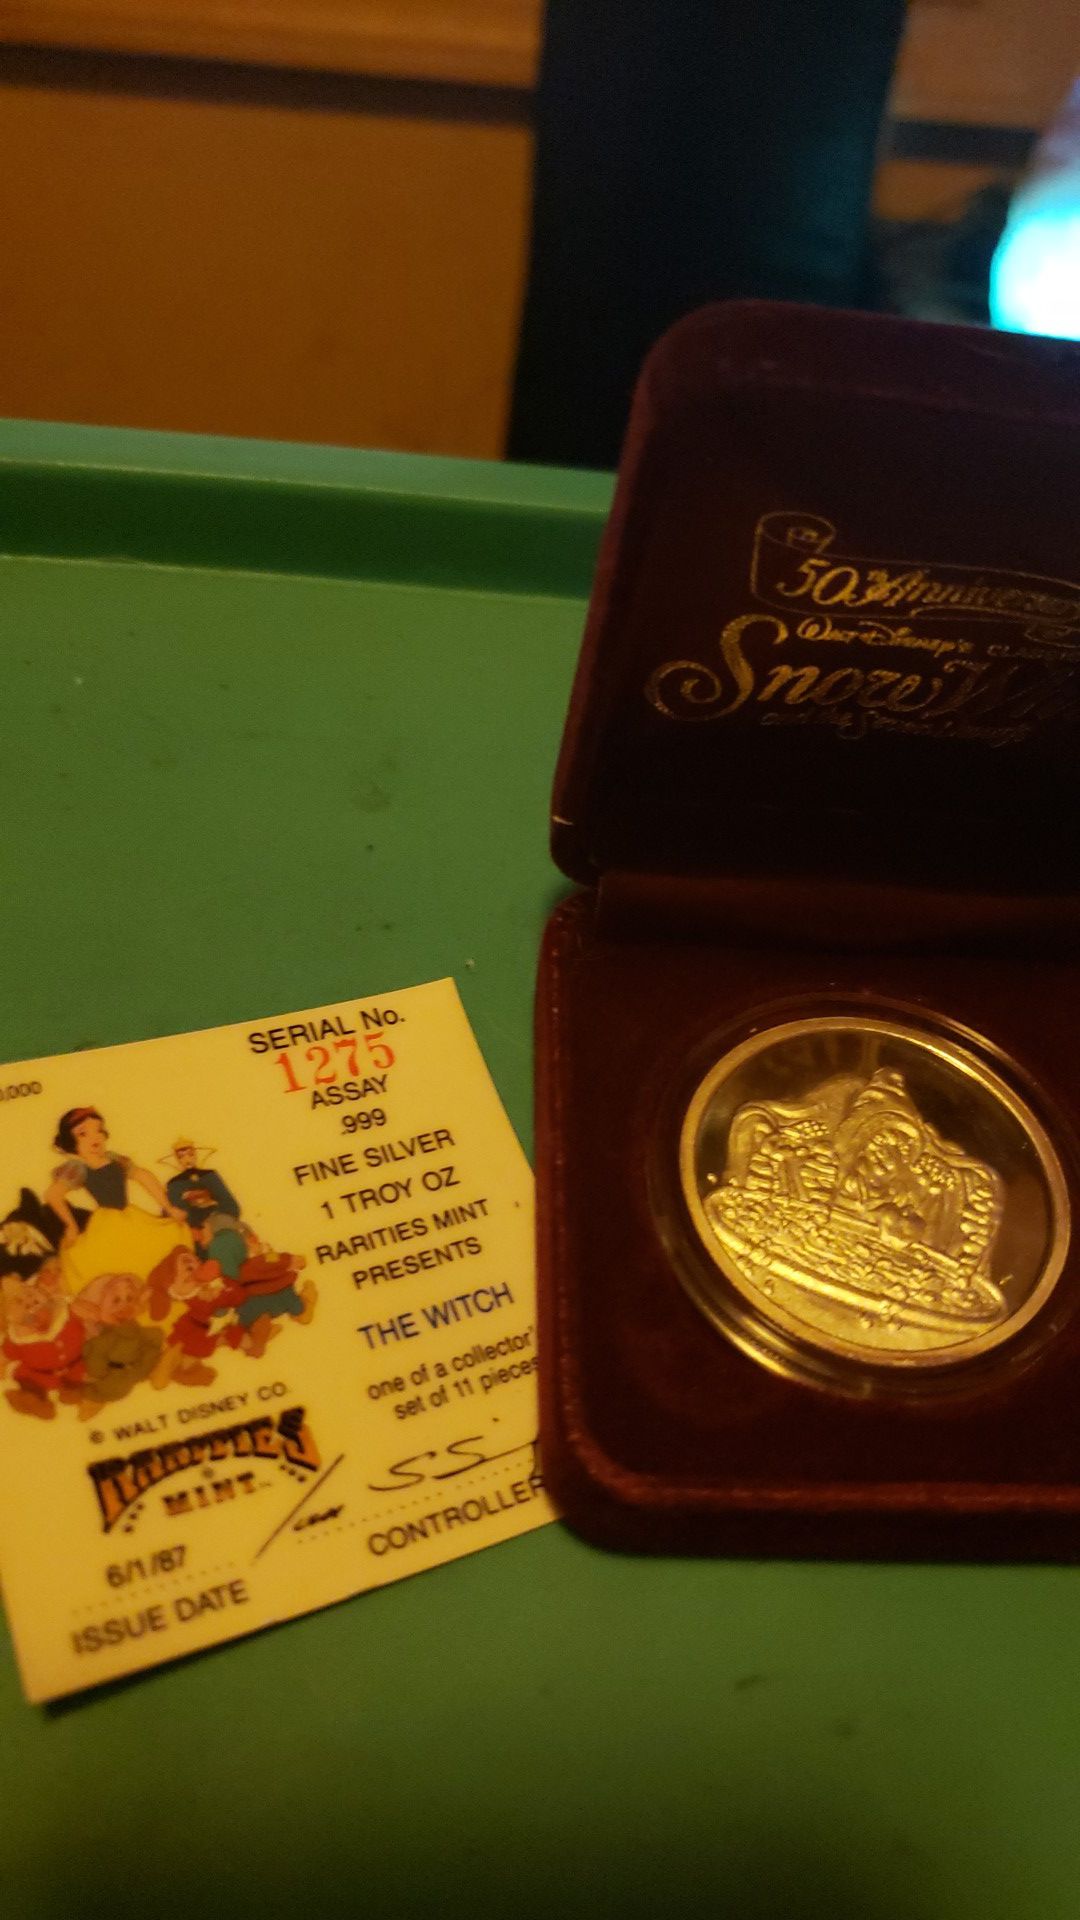 1987 Disneys Snow Whites 'WITCH' 1oz Silver Round! Comes w COA and Box! Asking $35 OBO